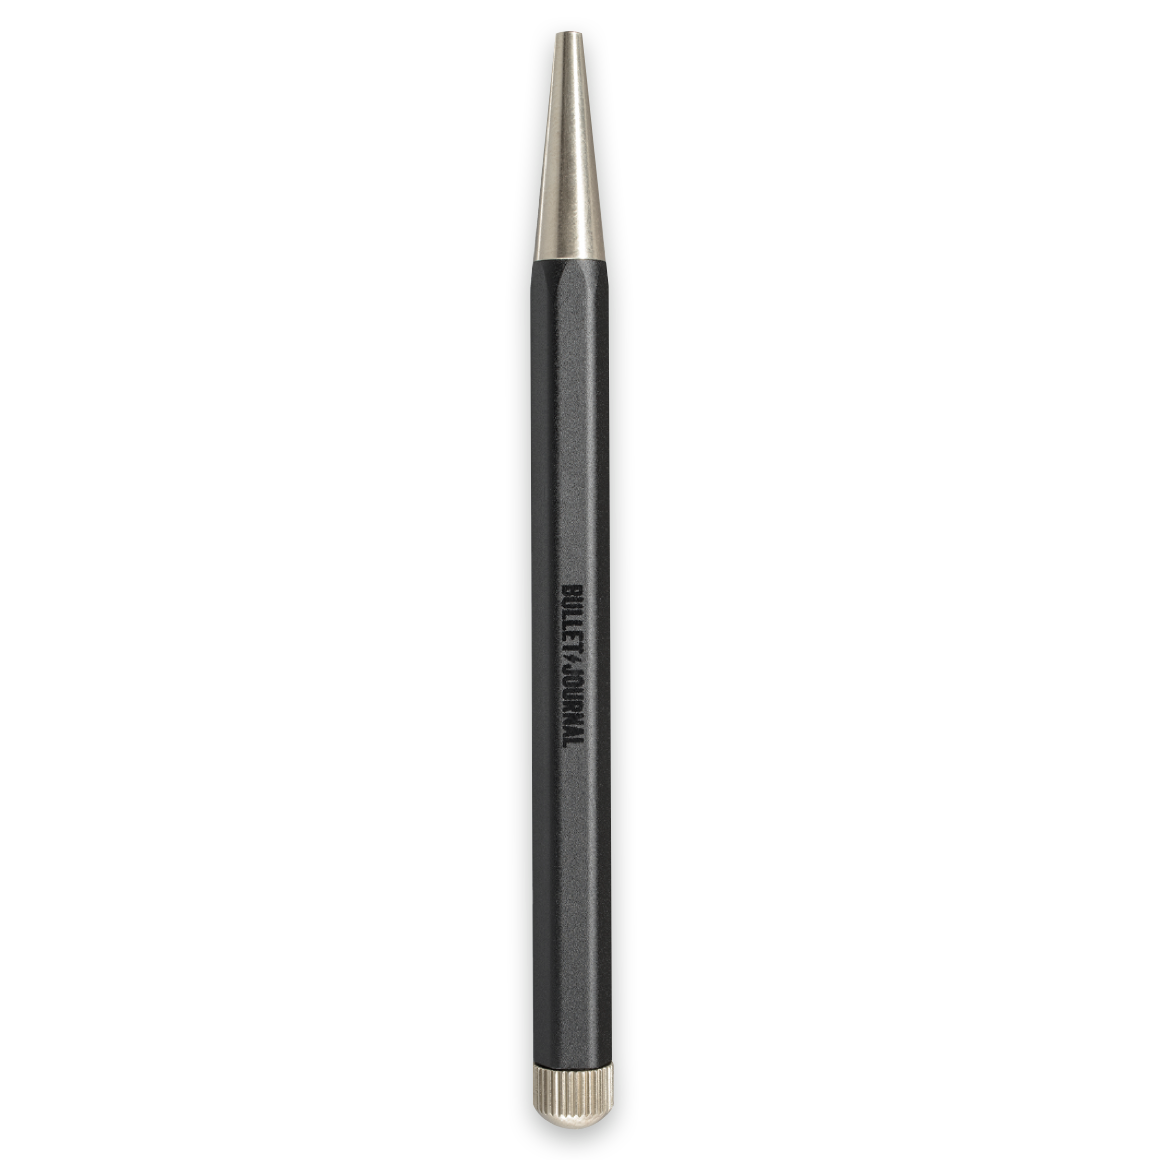 Drehgriffel Nr. 2 Bullet Journal Edition, Black - mechanical pencil